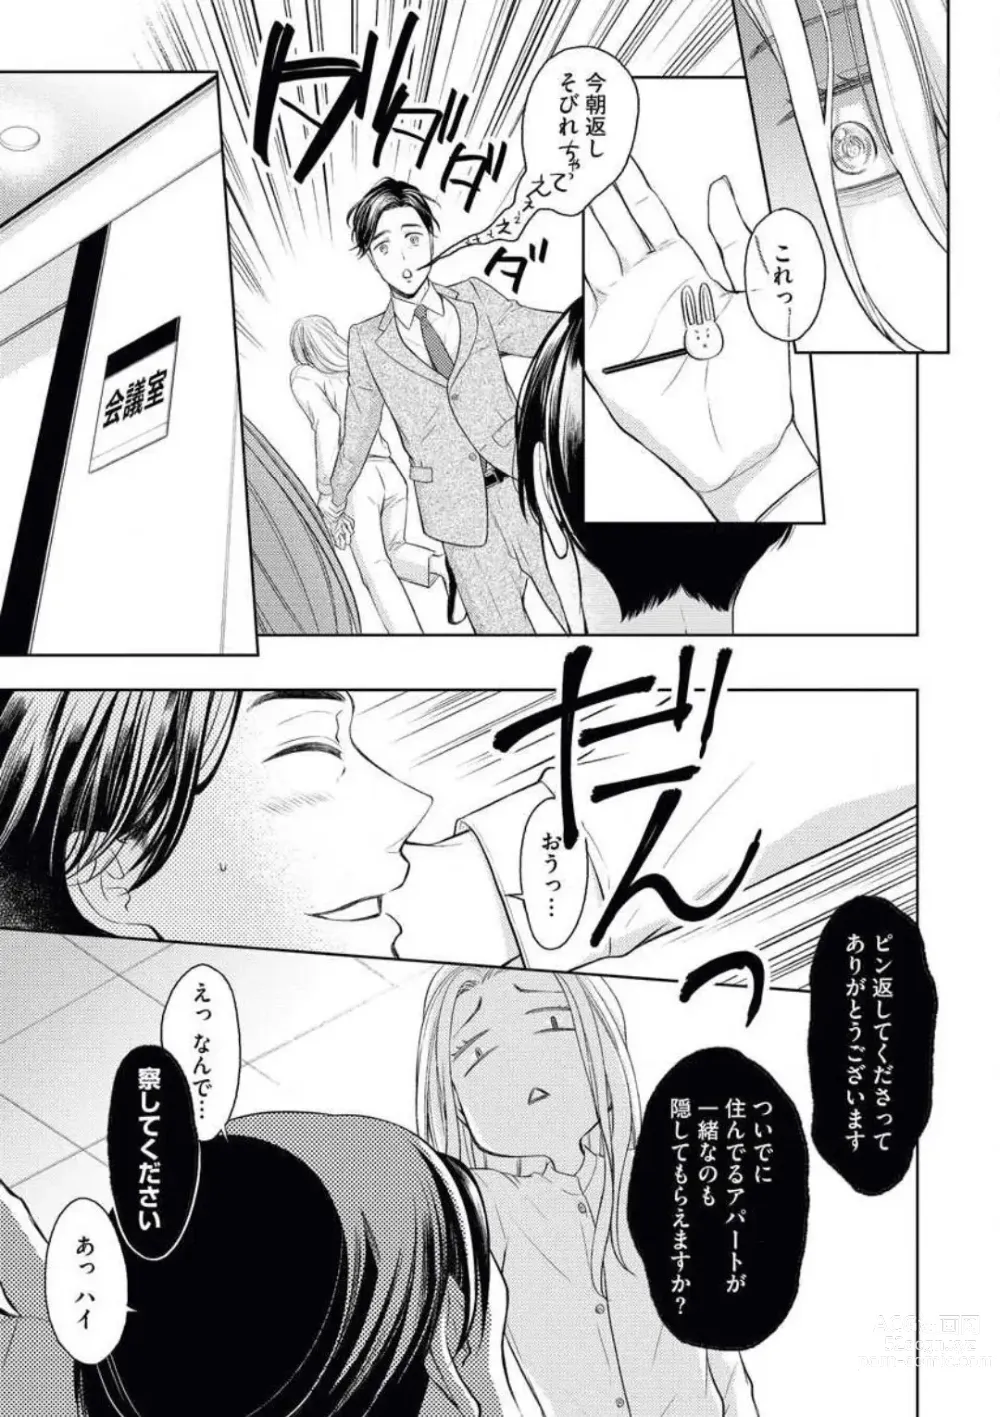 Page 9 of manga Mitsu Koi Maisonette